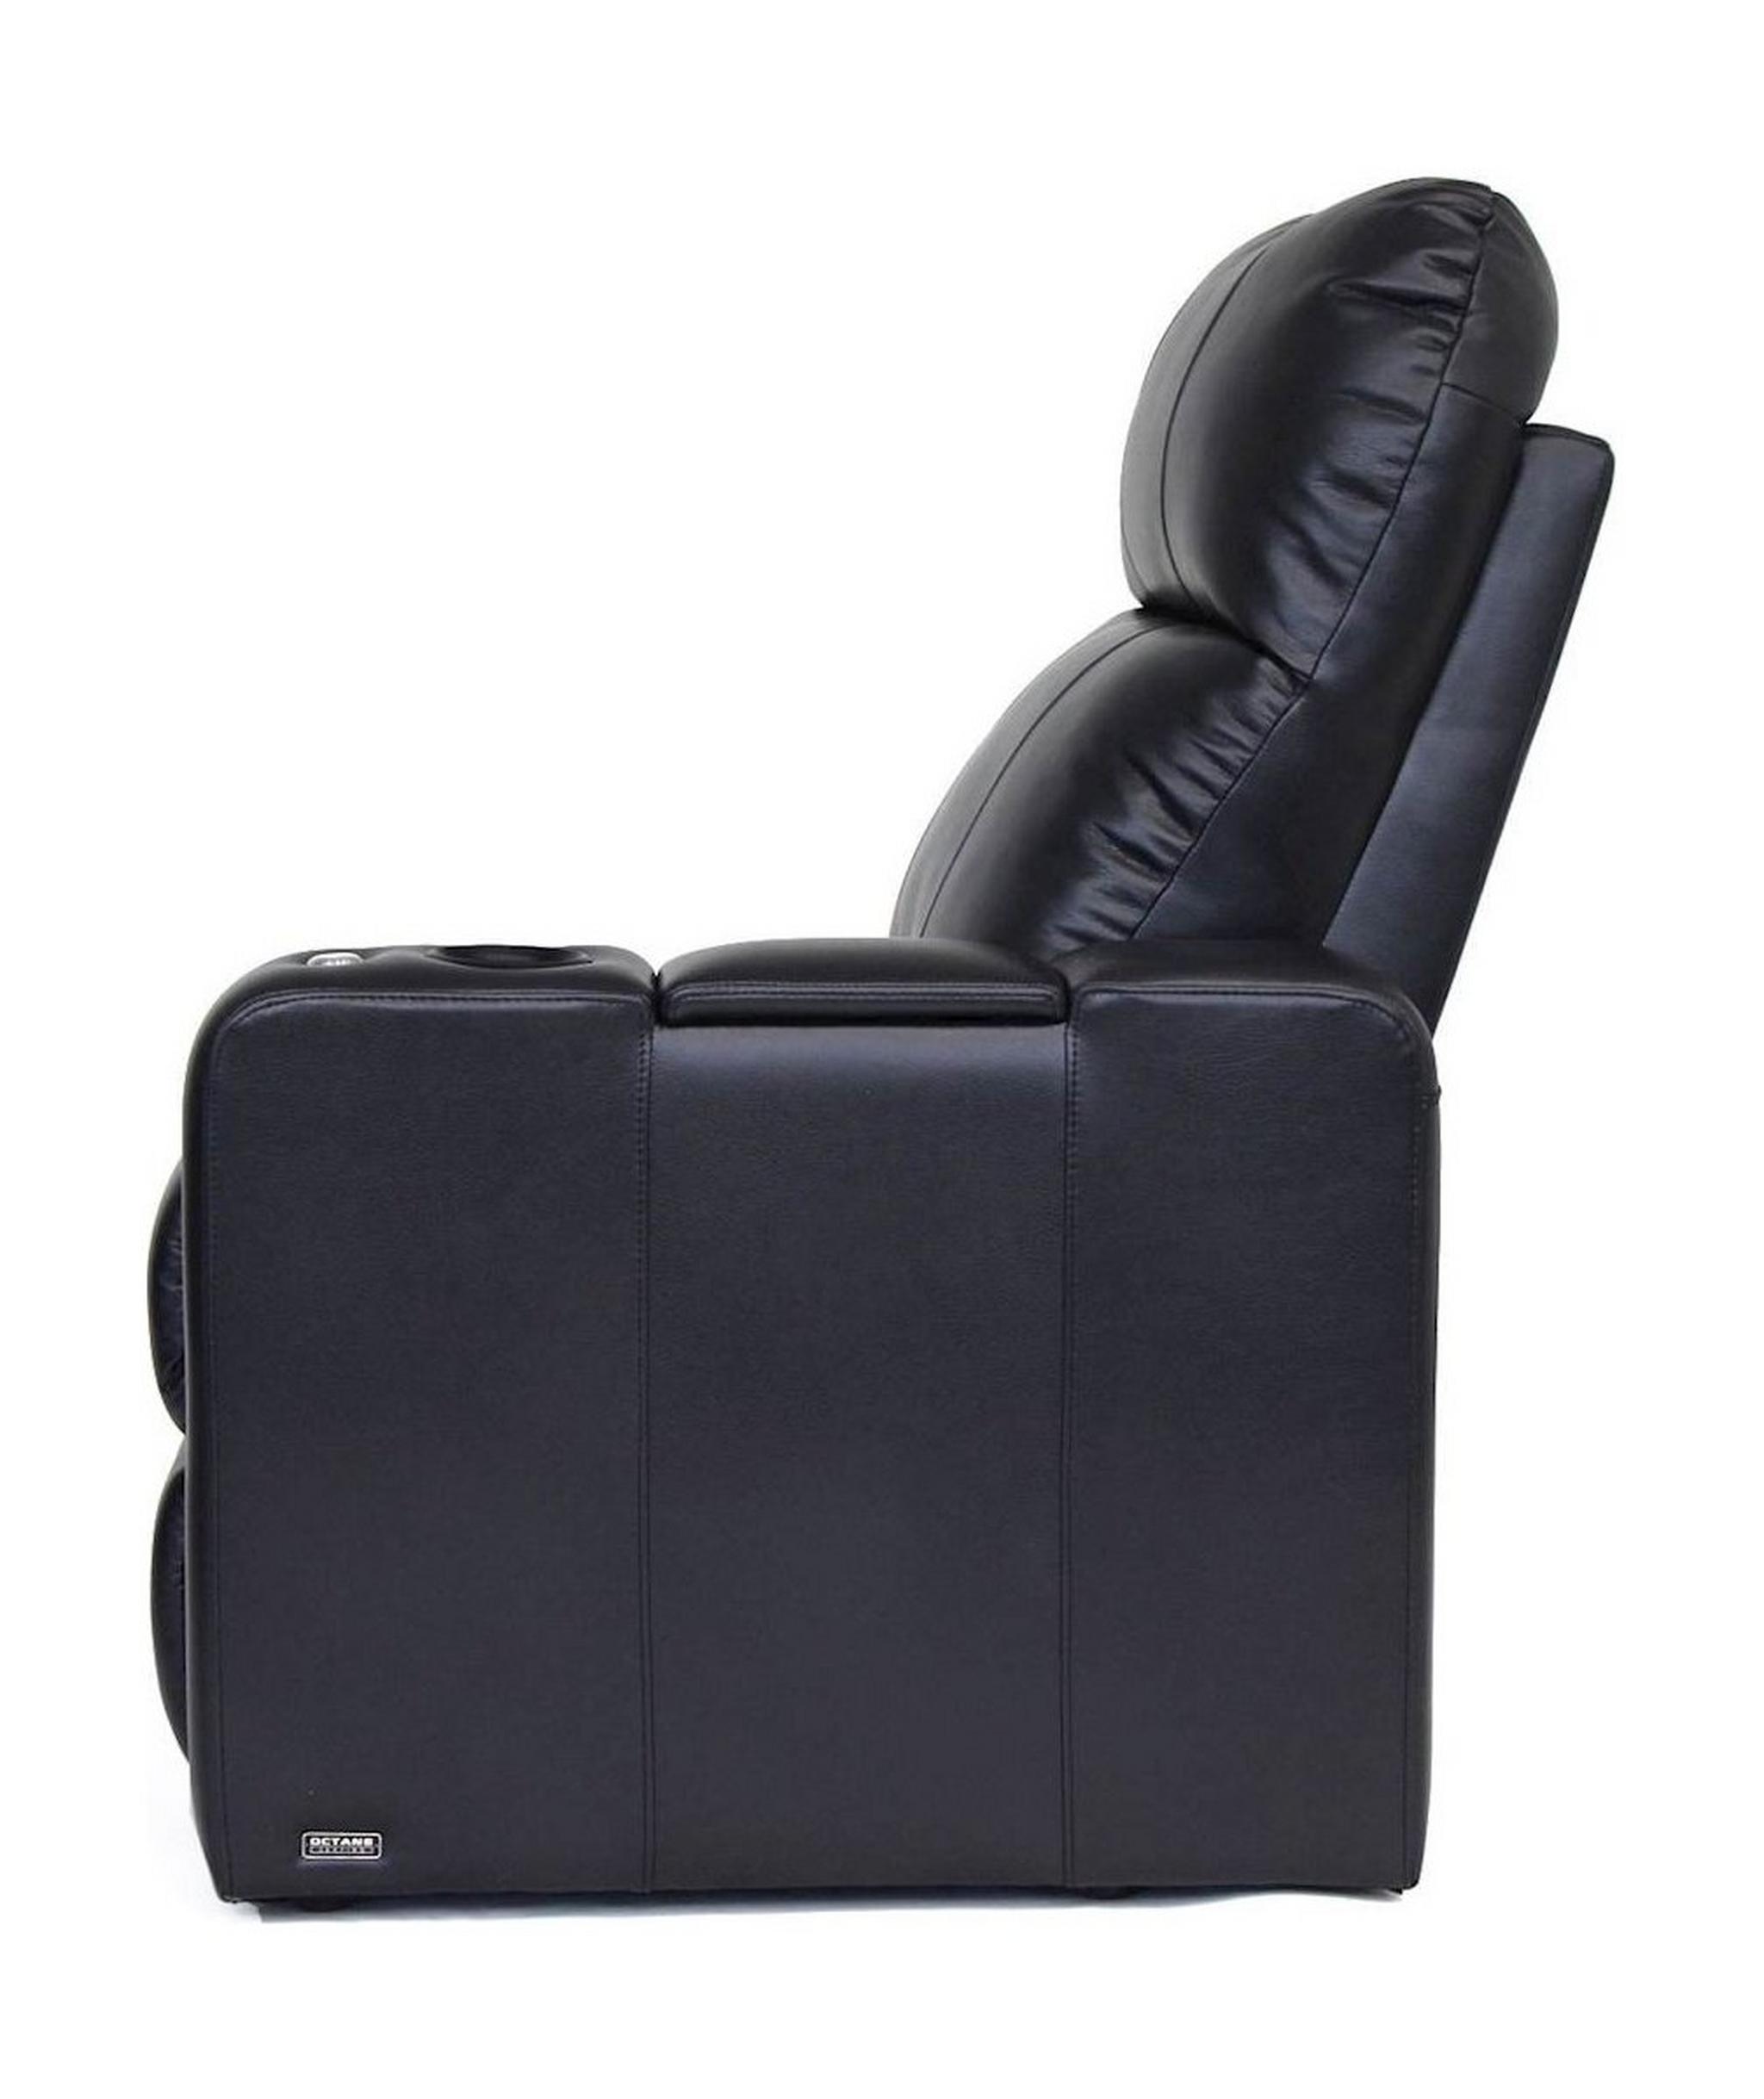 كرسي  جلد مرفق تحكم صوت و 1 ذراع تحكم قابل للتعديل (XL700-5201) من كستوم – أسود